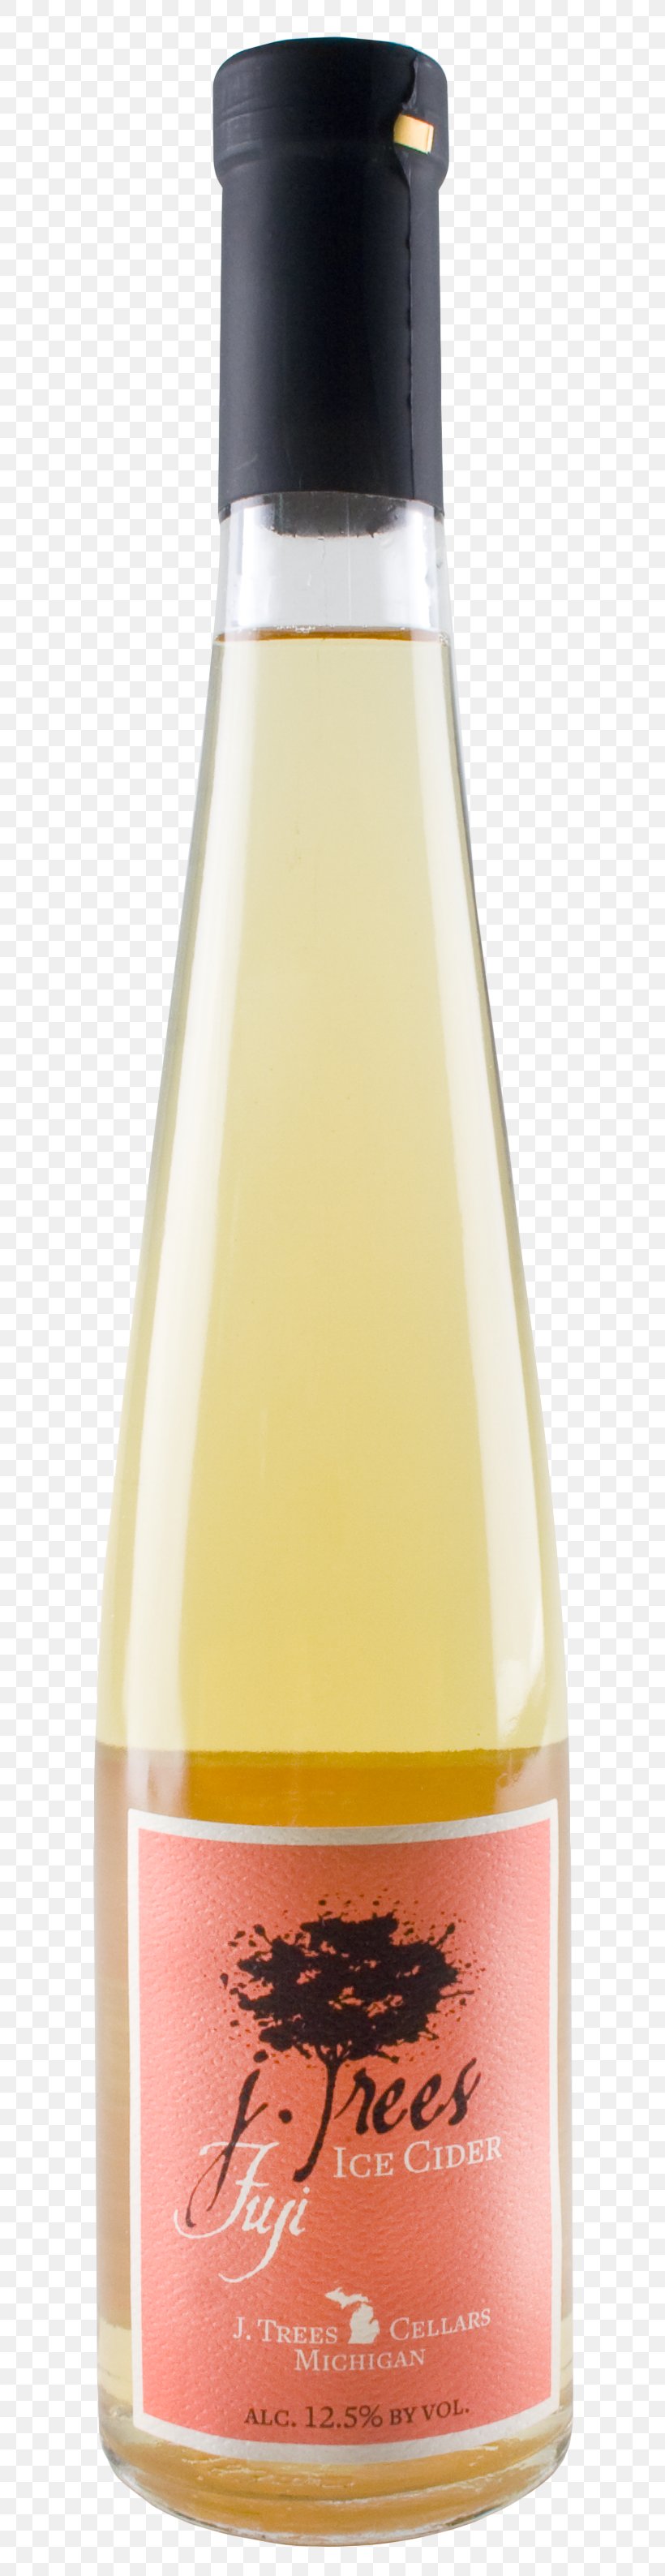 Liqueur Wine Bottle, PNG, 664x3176px, Liqueur, Bottle, Distilled Beverage, Drink, Wine Download Free